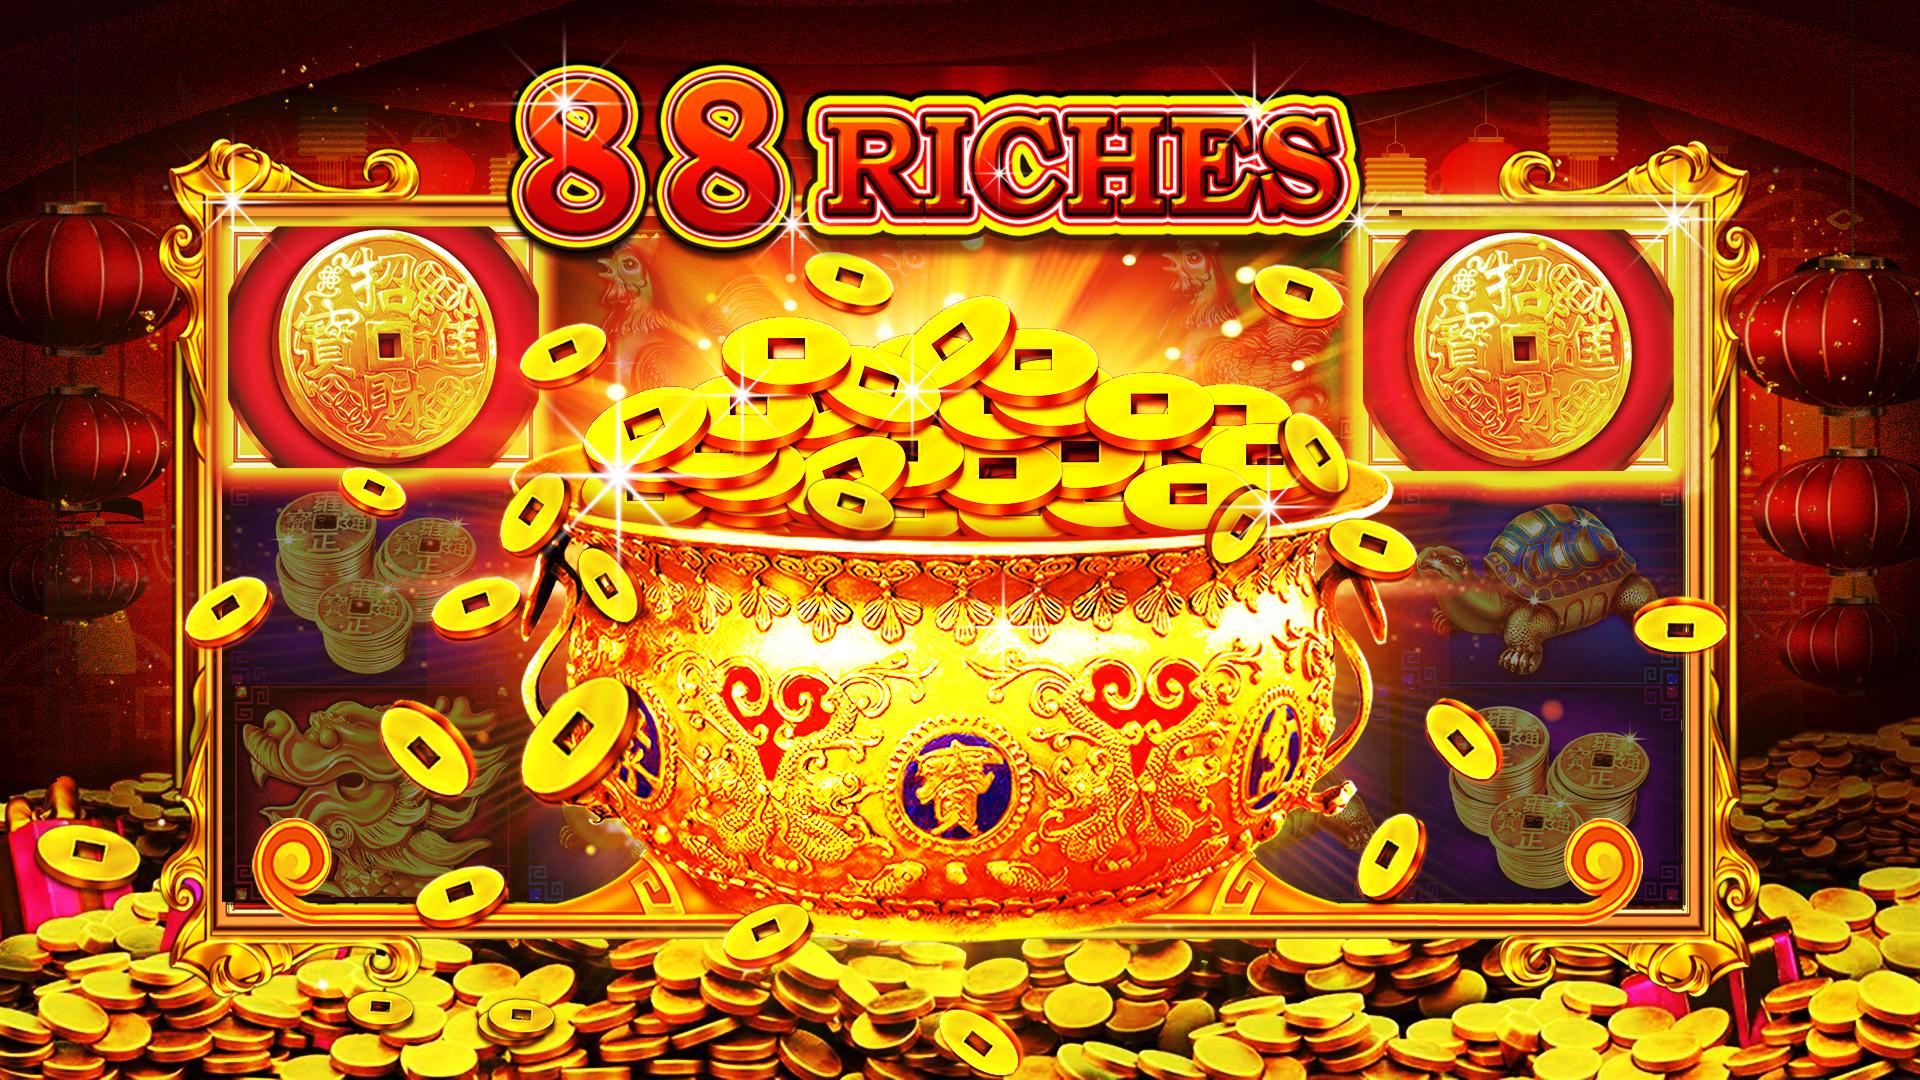 大富豪赌场 免费经典老虎机游戏安卓下载 安卓版apk 免费下载